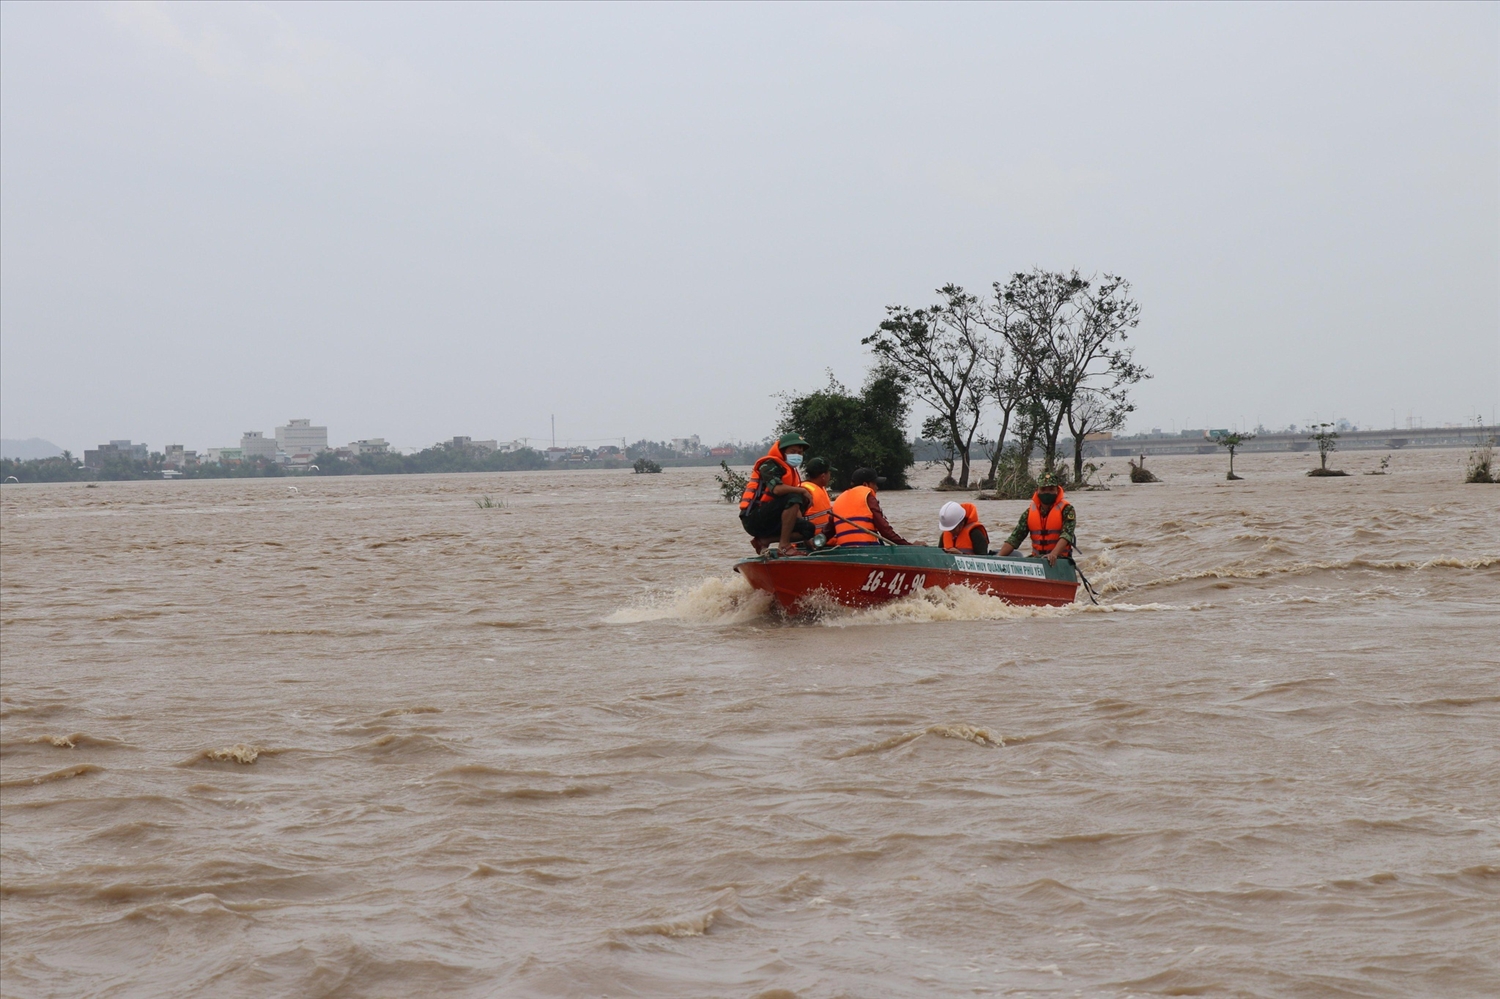 Lực lượng cứu hộ Bộ Chỉ huy Quân sự tỉnh Phú Yên đưa xuồng chuyên dụng ra sông Ba tiếp cận những người dân bị mắc kẹt do lũ về. Ảnh: THANH VINH